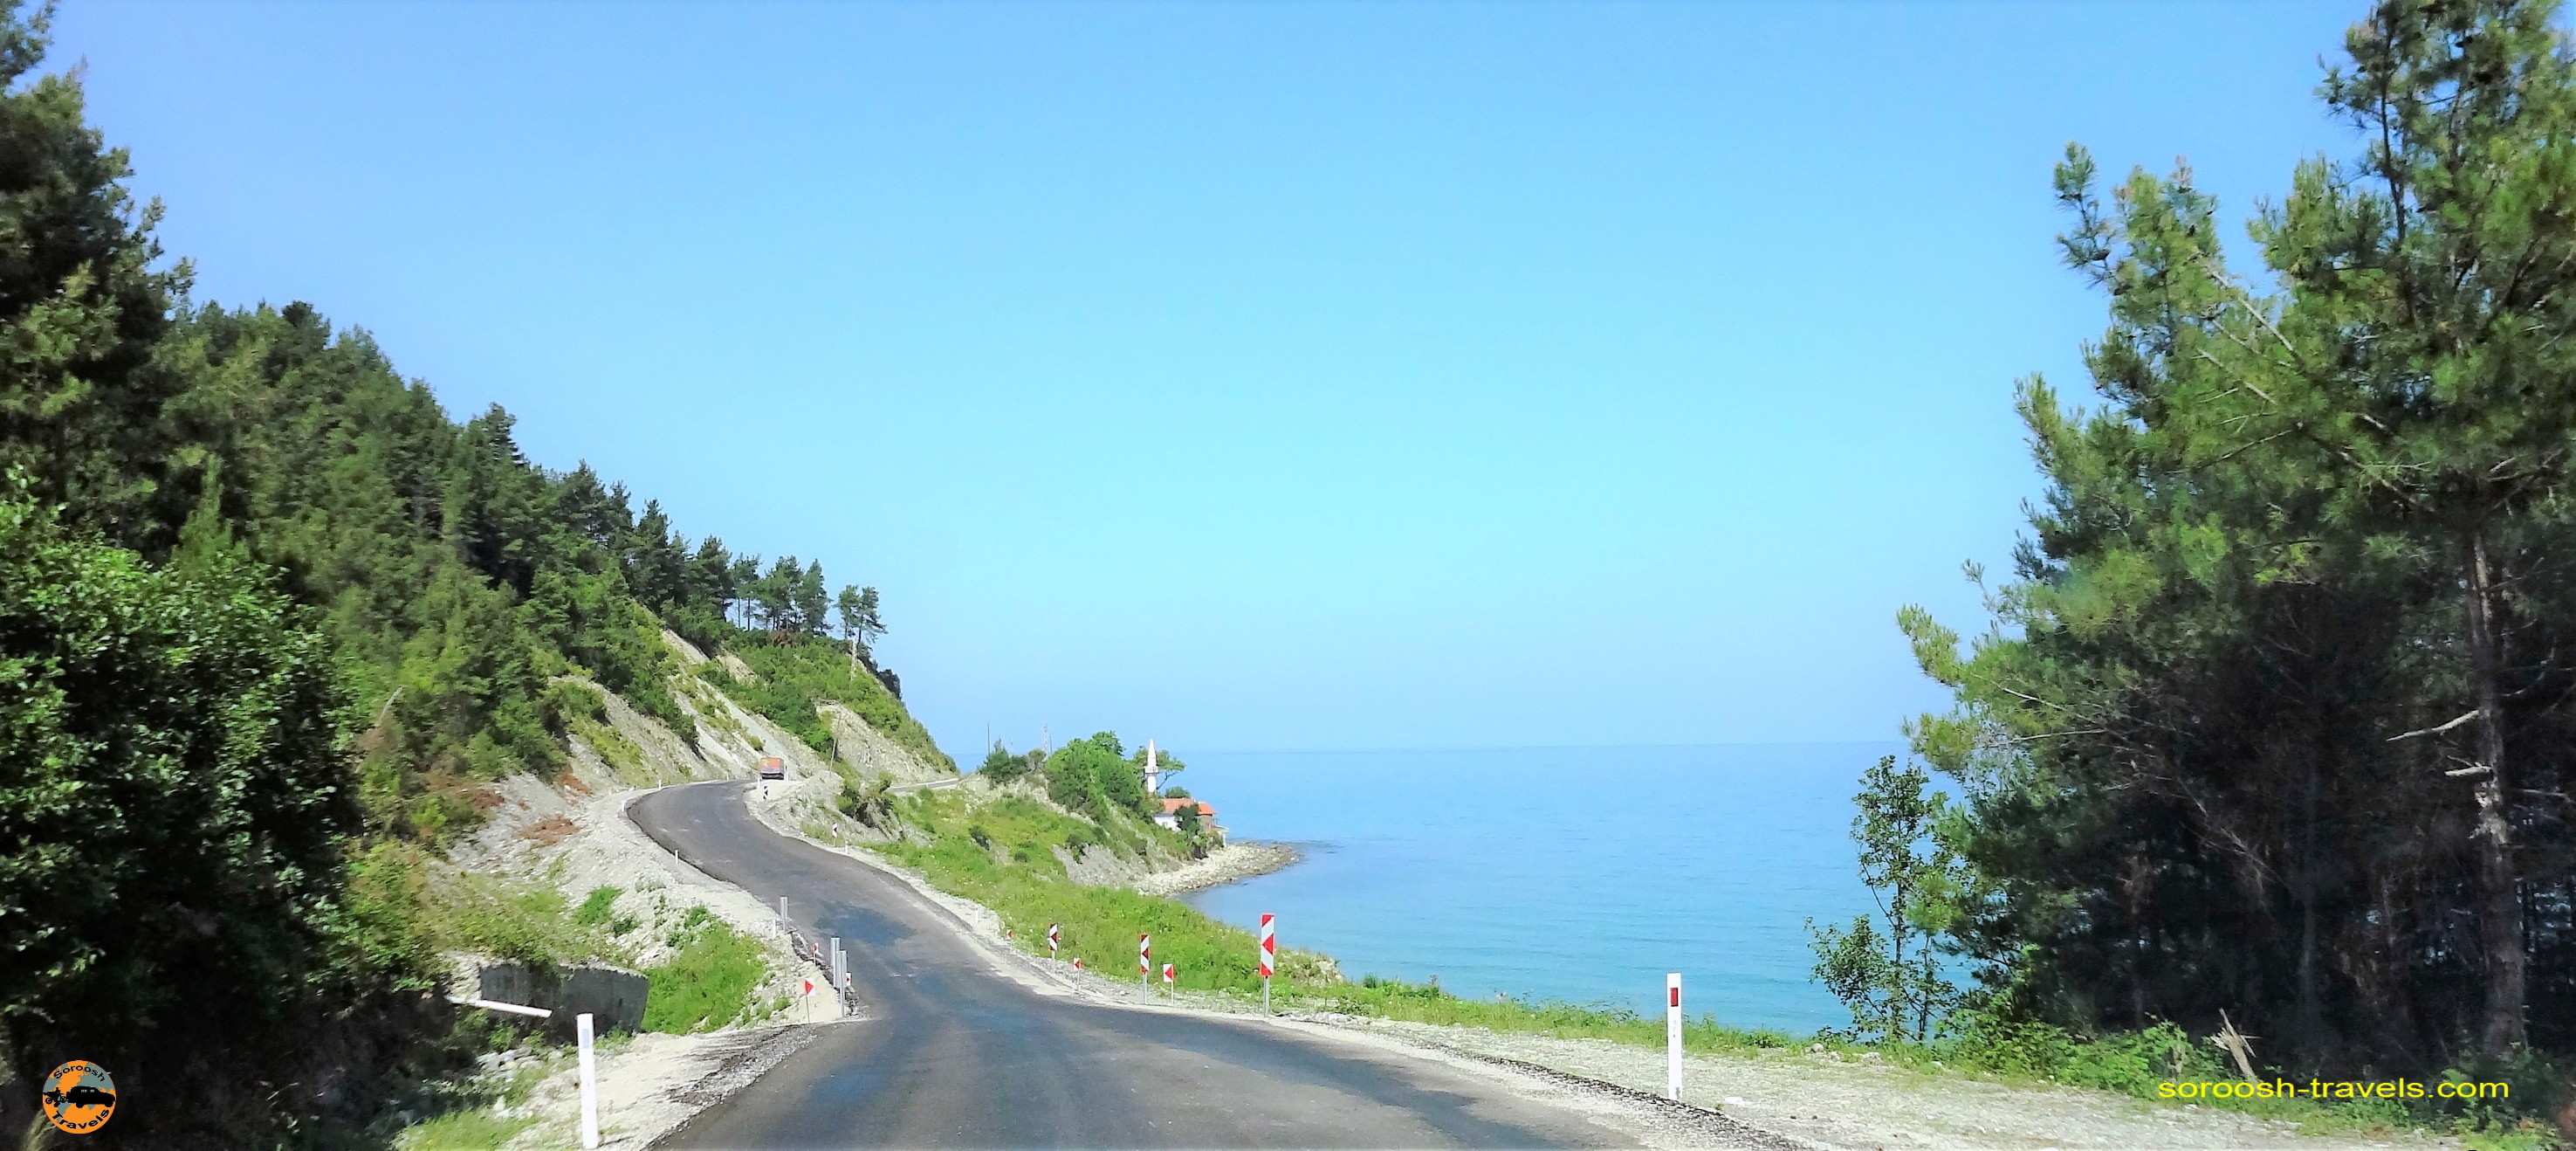 سفر به اروپا با اتوموبیل – تابستان ۱۳۹۰ – جاده های رویایی کنار دریای سیاه